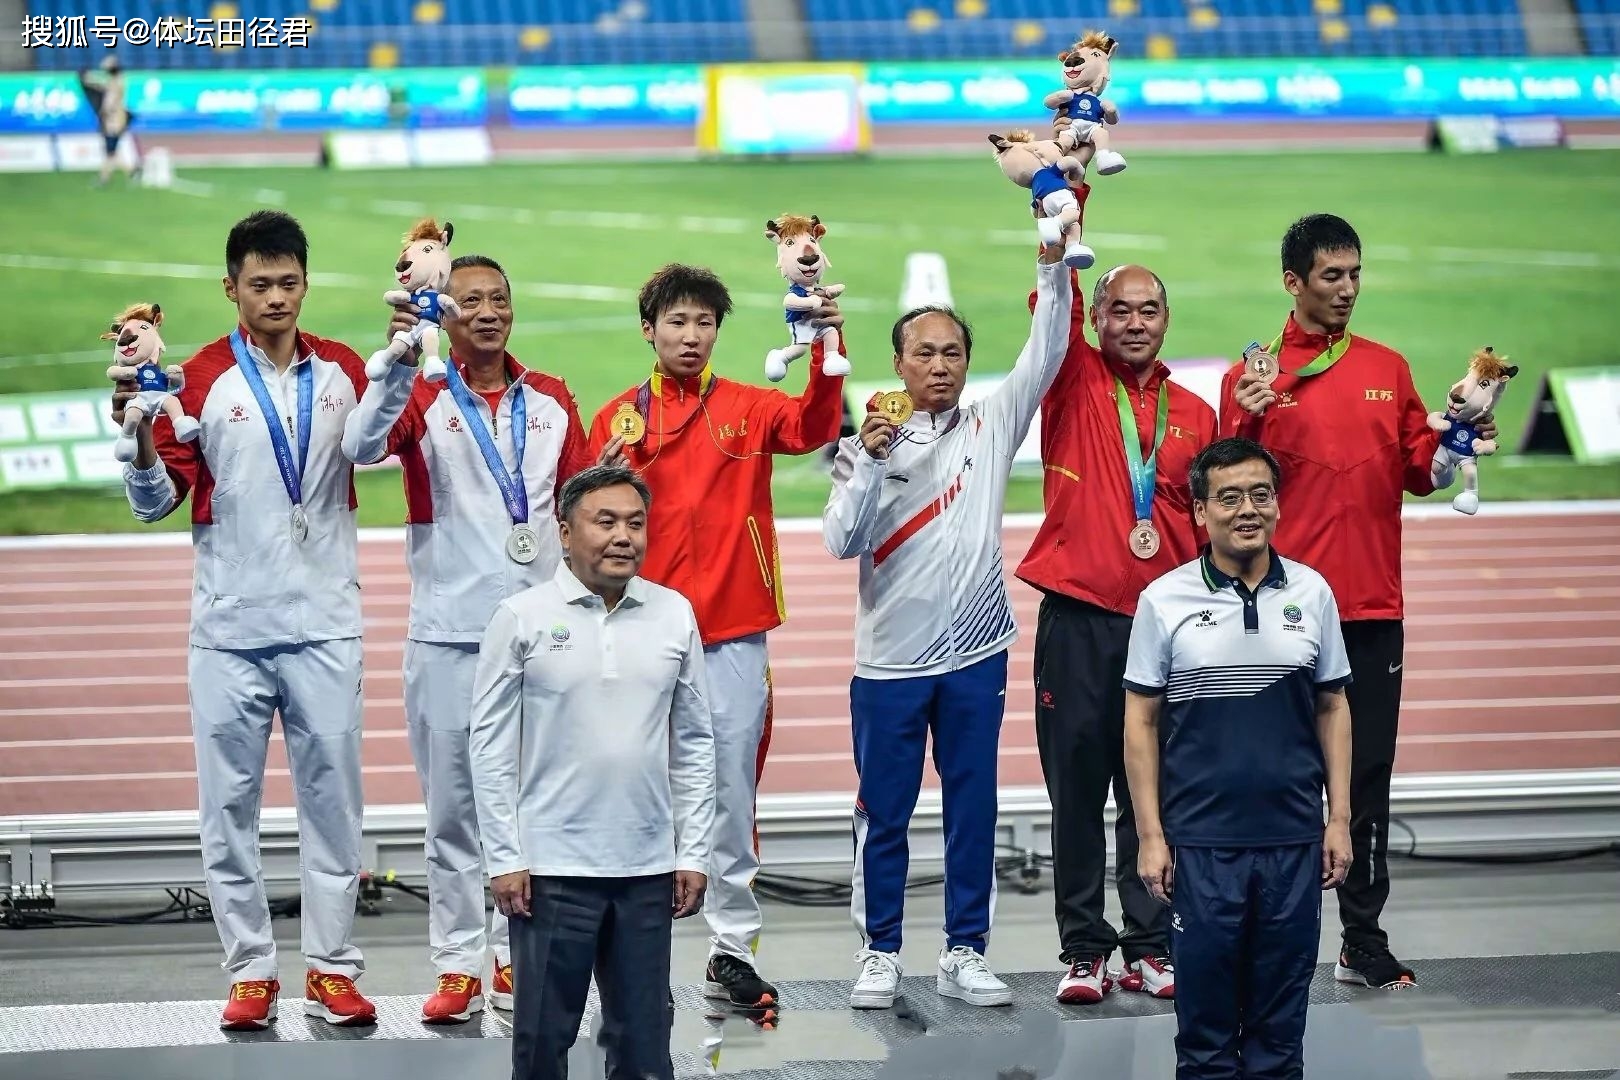 名将张峰夺得铜牌,从2019年开始,江苏两大飞人盛超,隋高飞强势崛起